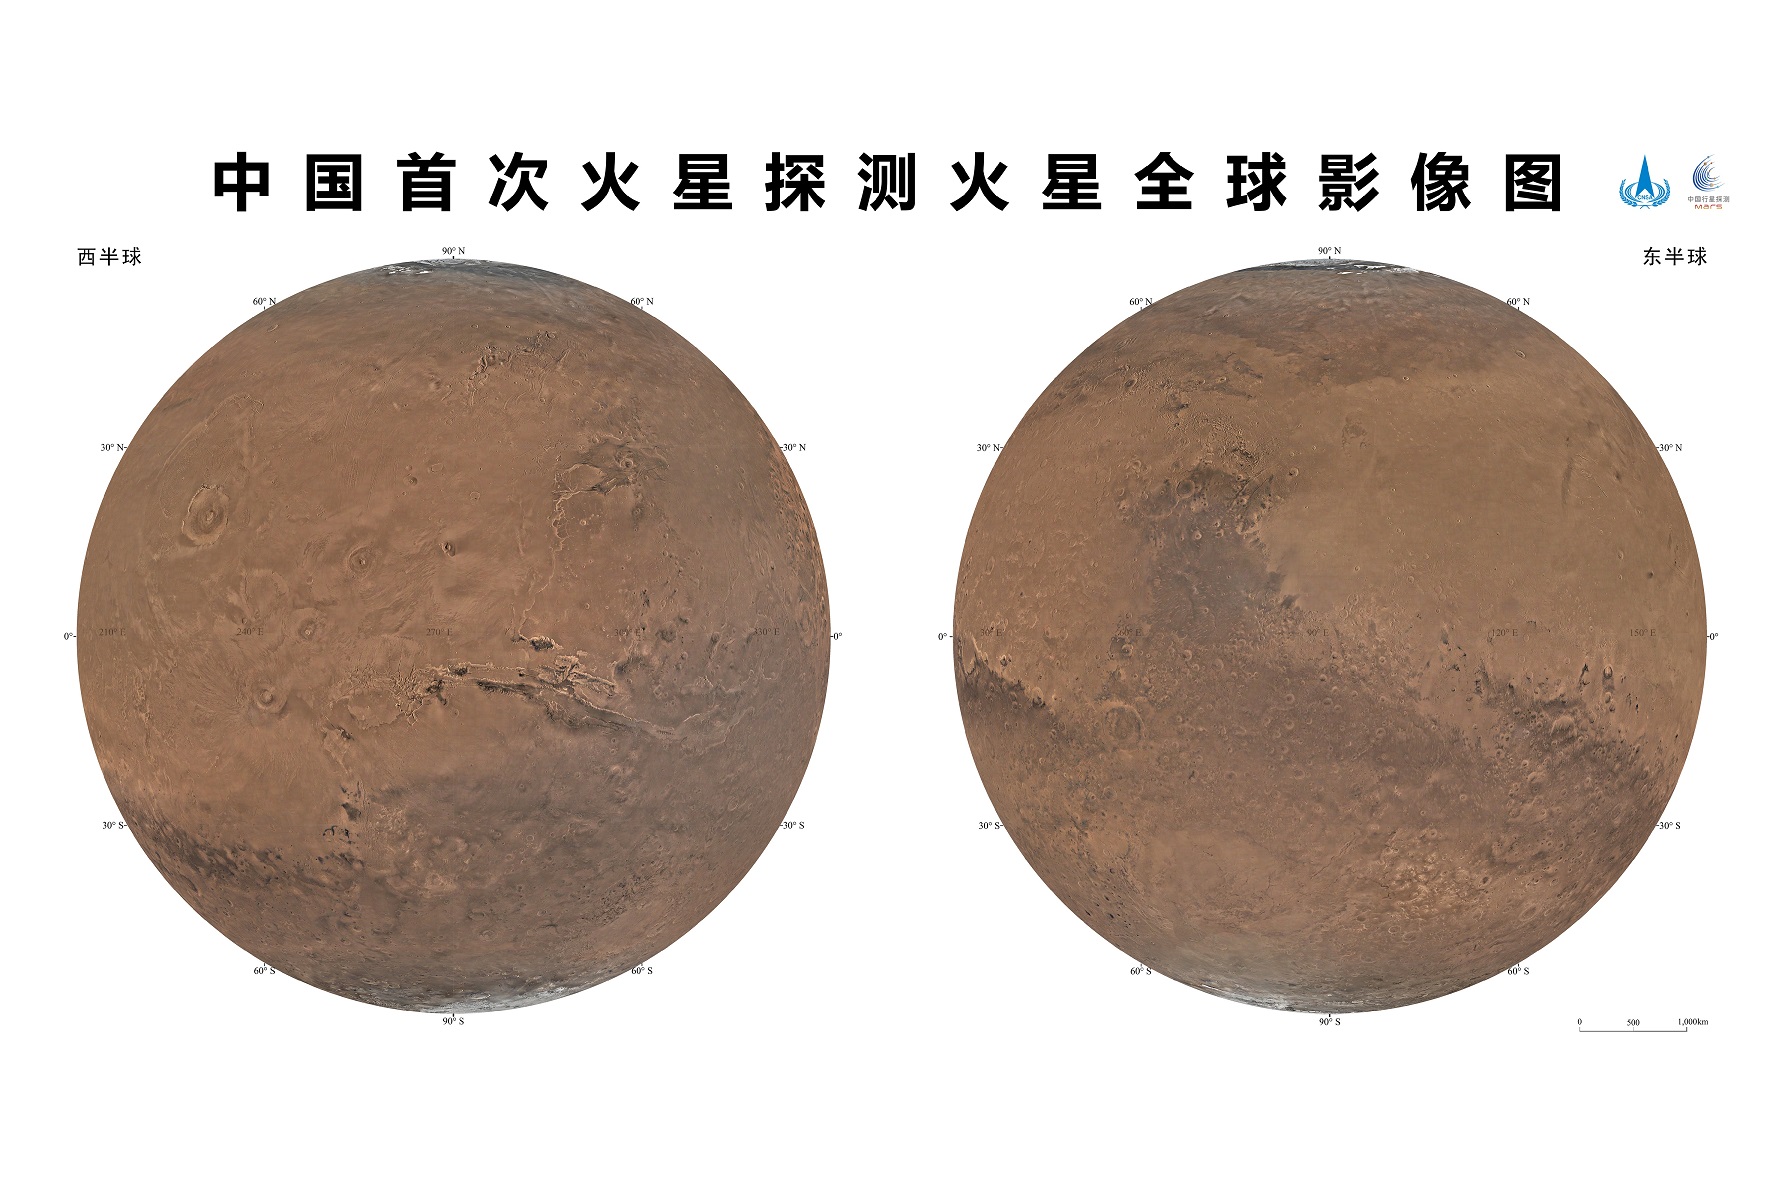 _国家航天局、中国科学院联合发布中国首次火星探测火星全球影像图